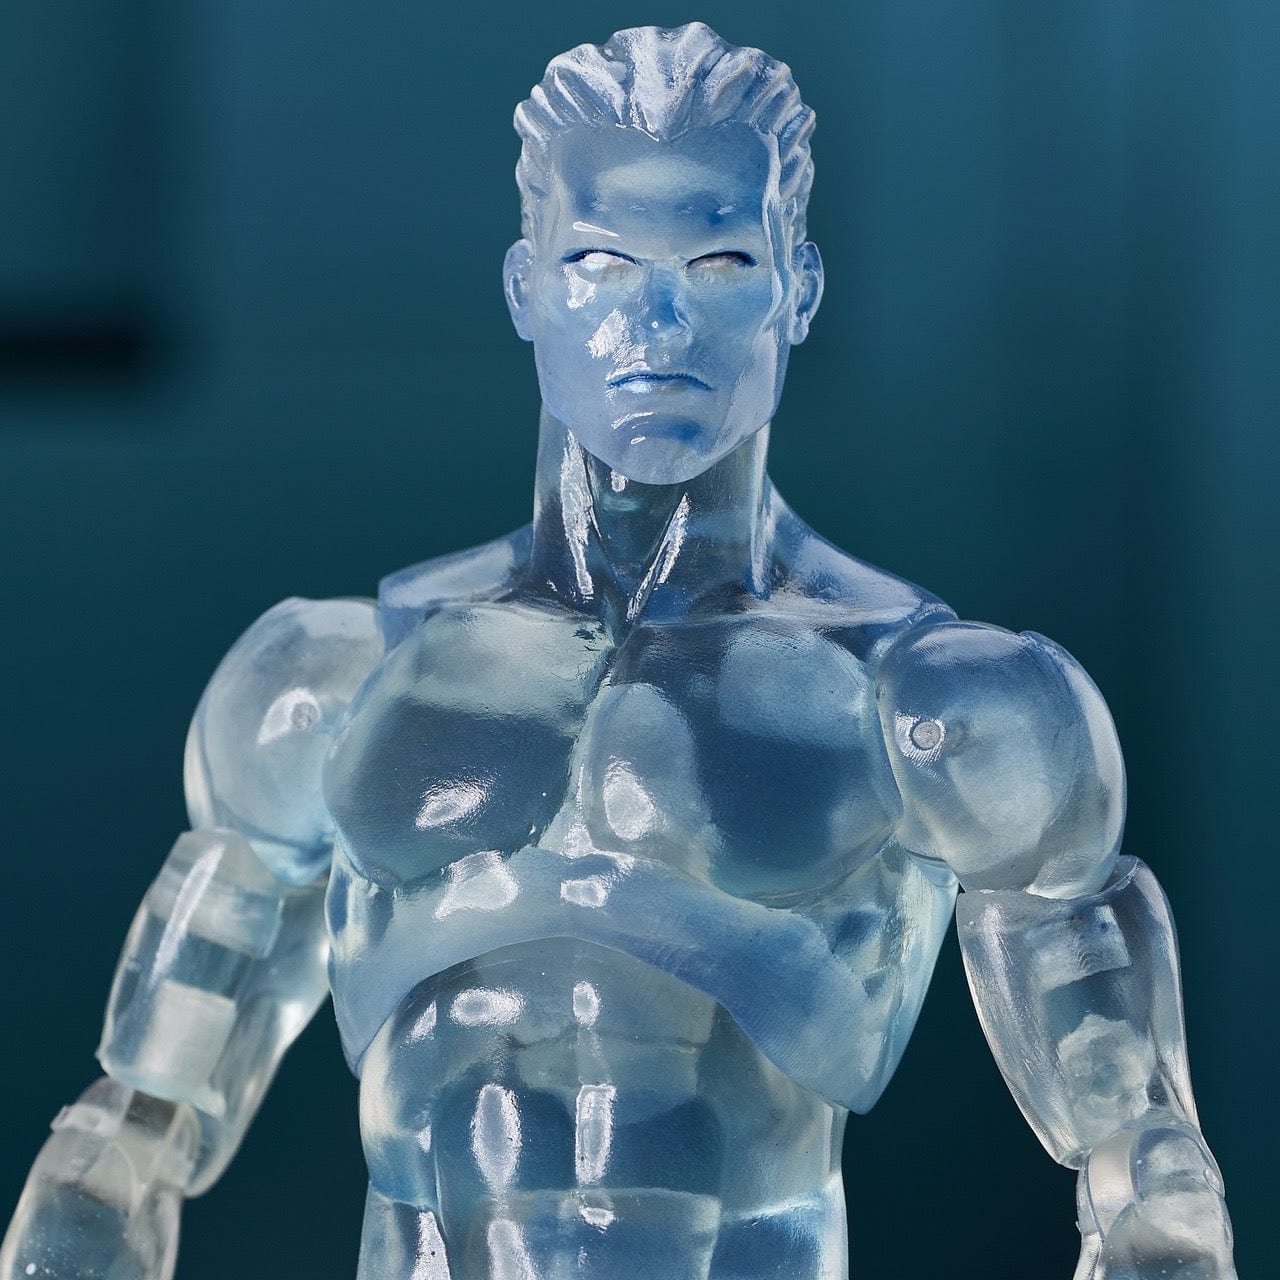 Diamond Select Toys Marvel Select Iceman Action Figure